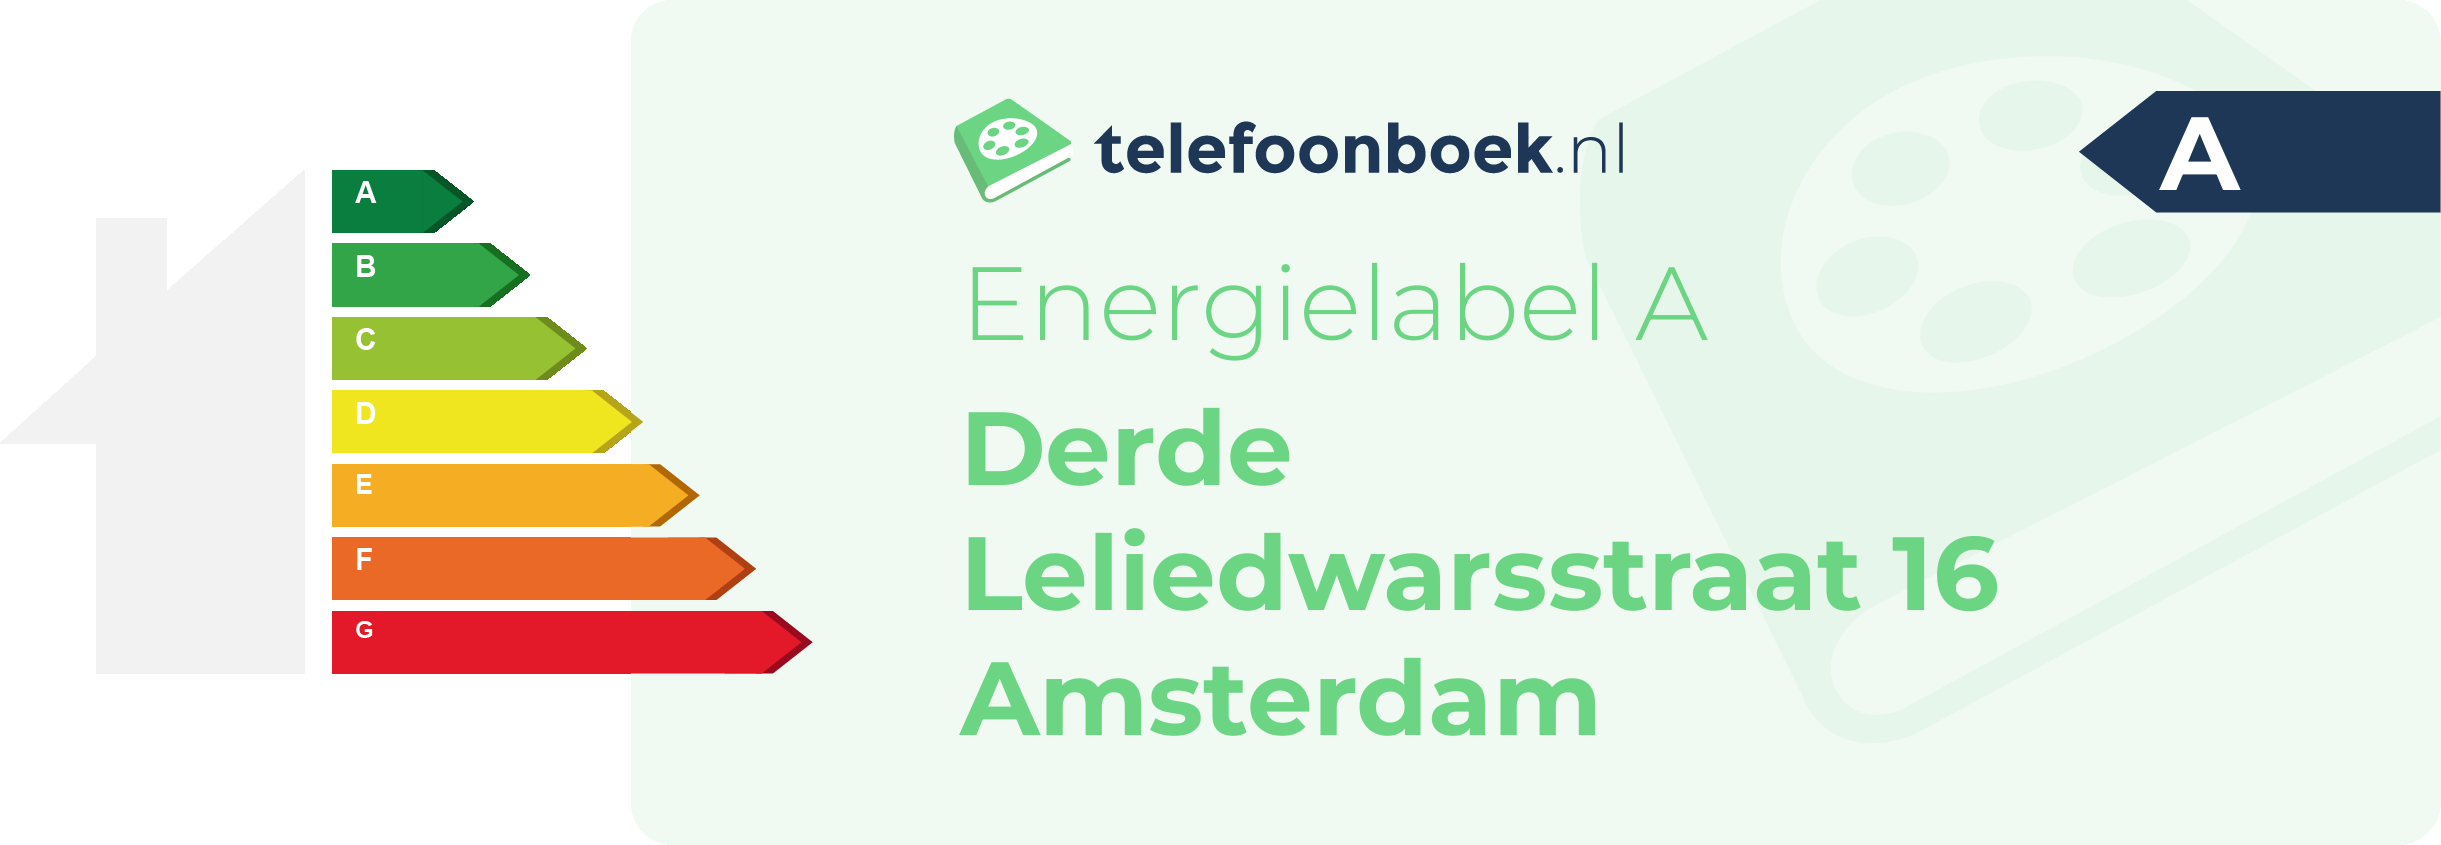 Energielabel Derde Leliedwarsstraat 16 Amsterdam